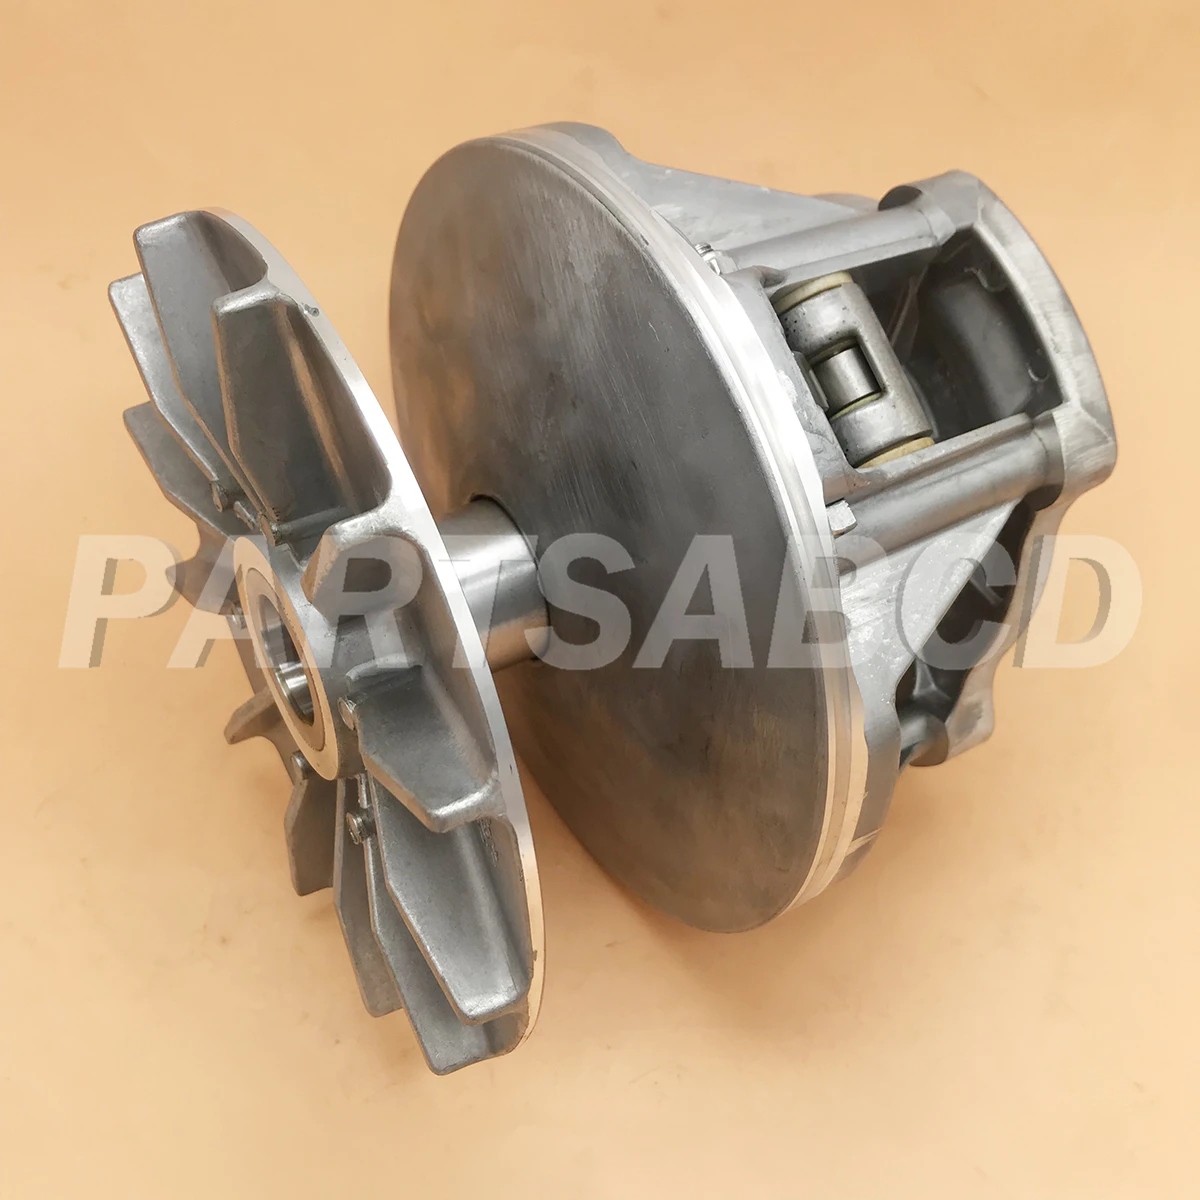 Полный комплект приводного сцепления для Polaris Sportsman 500 CVT приводной шкив первичный Привод сцепления 1996-2013